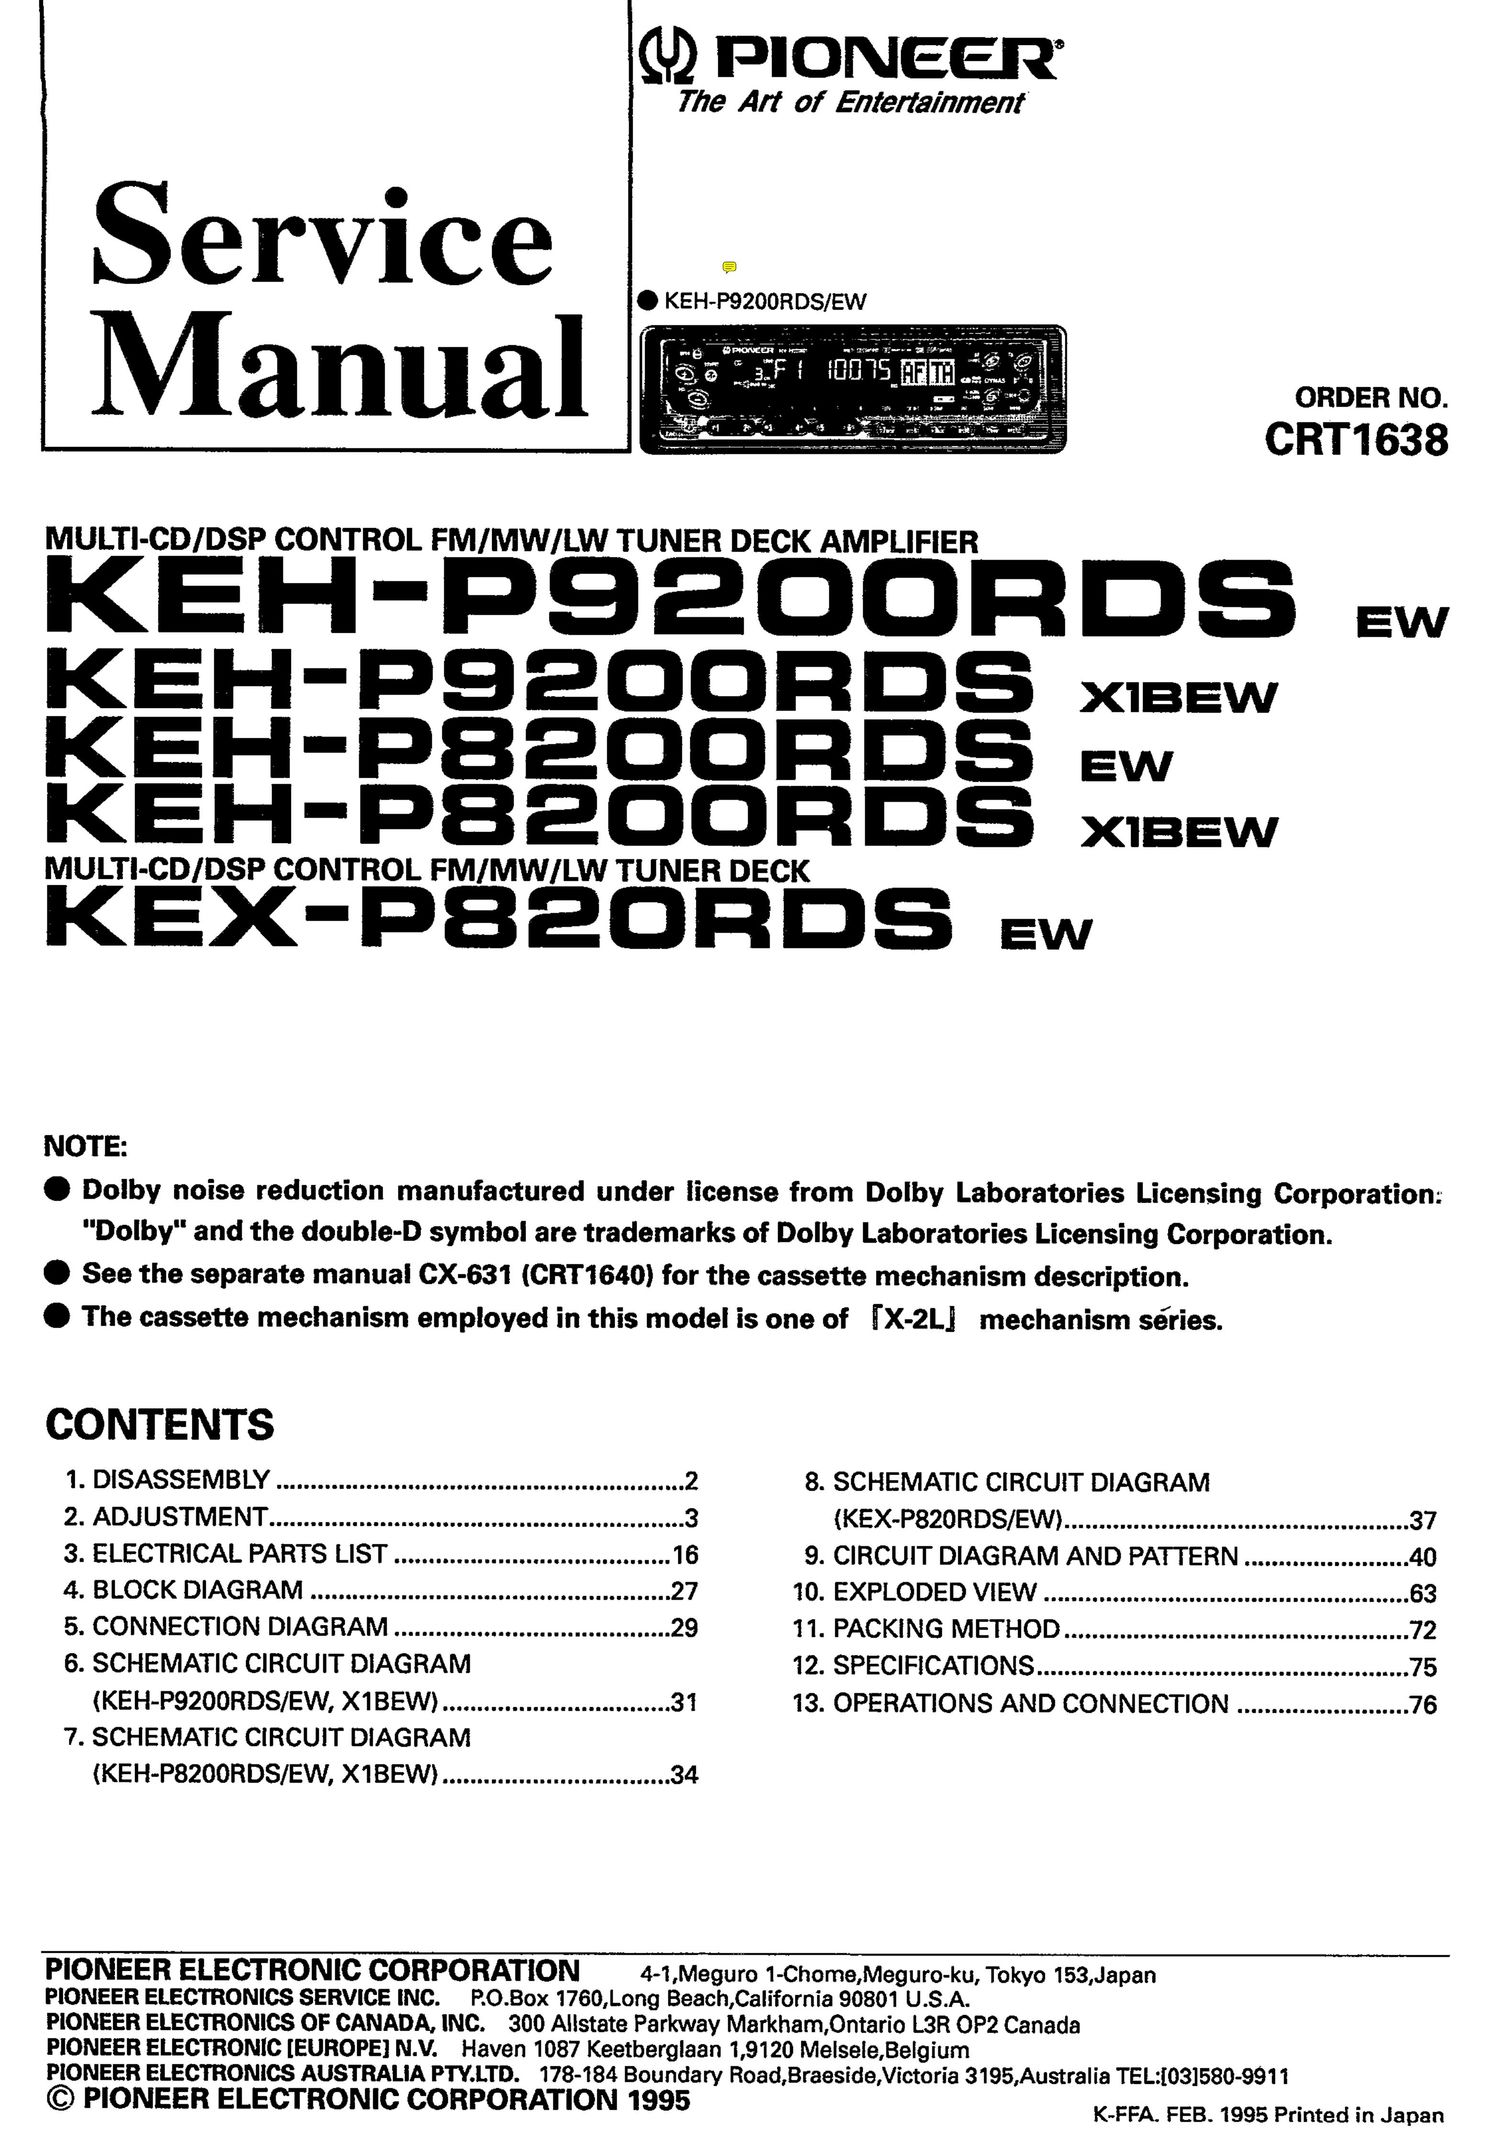 pioneer kehp 9200 rdsx 1 bew owners manual